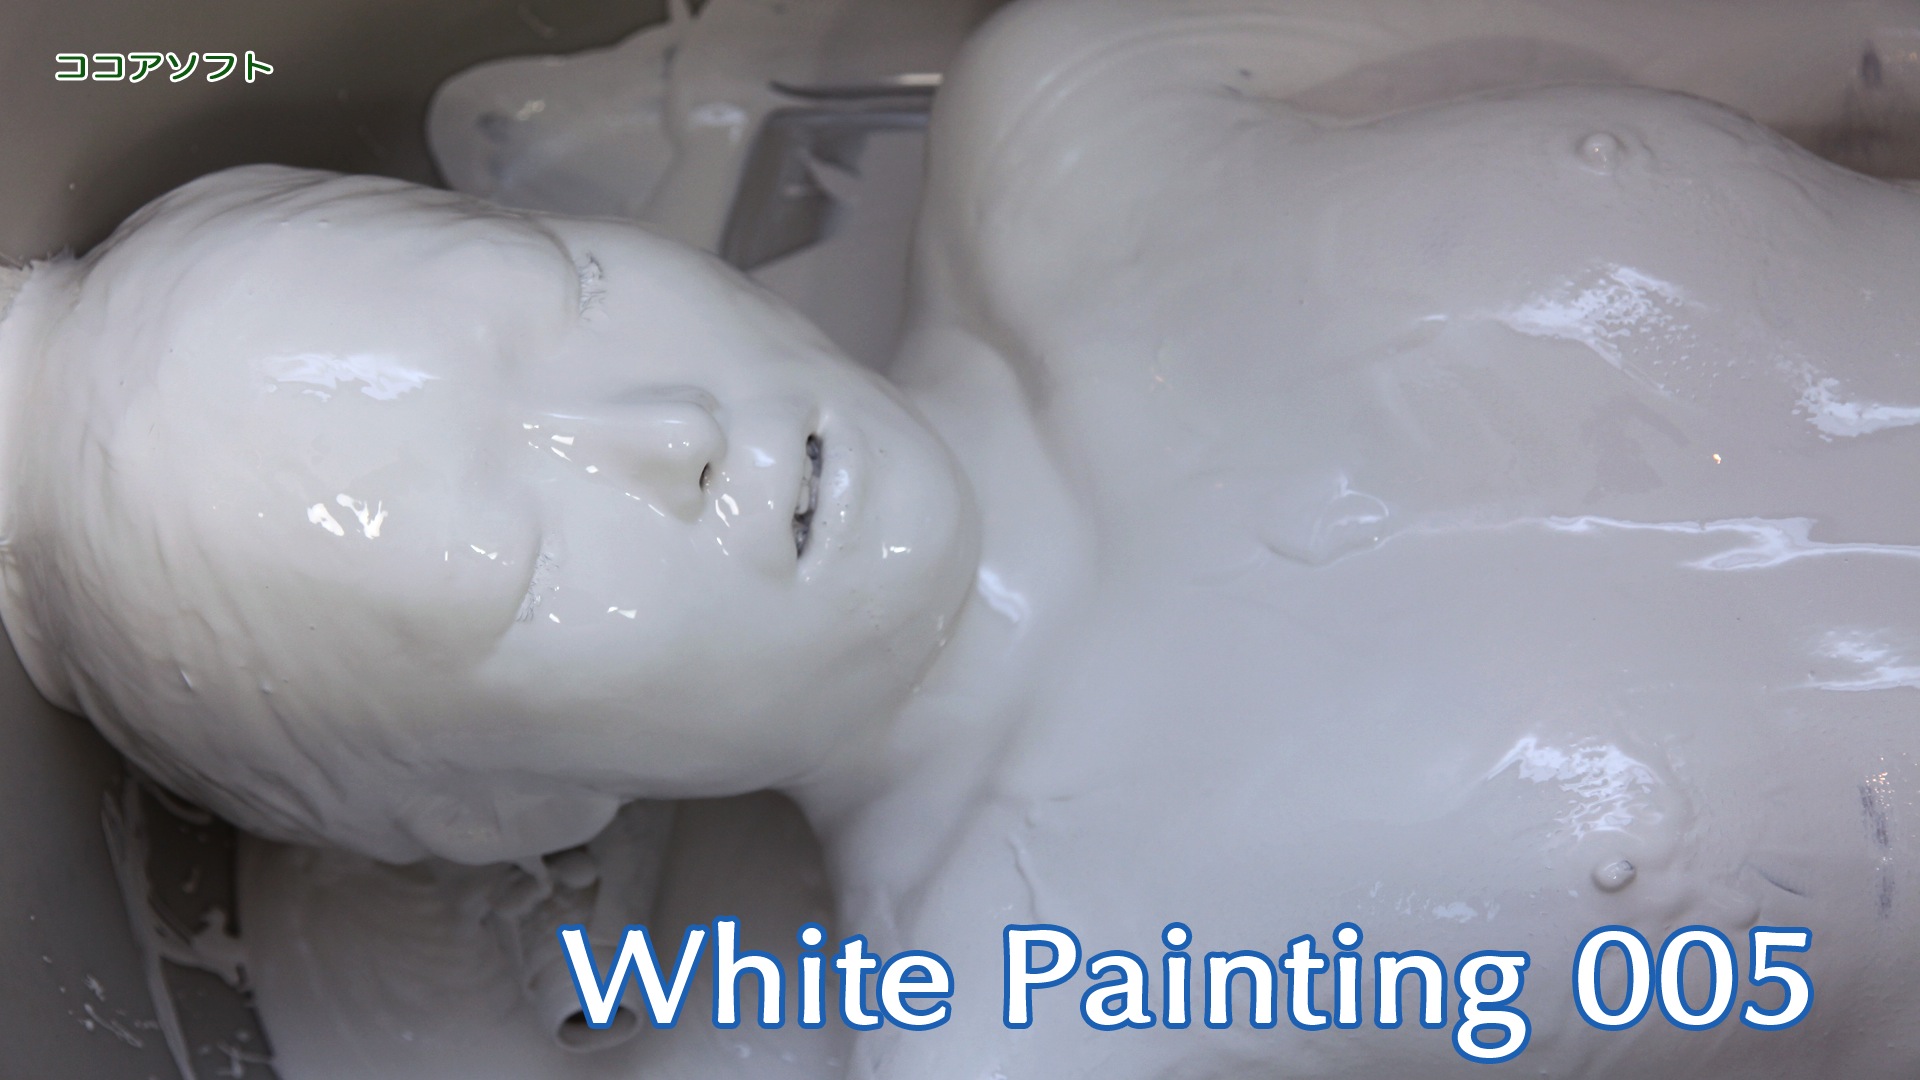 White Painting 005